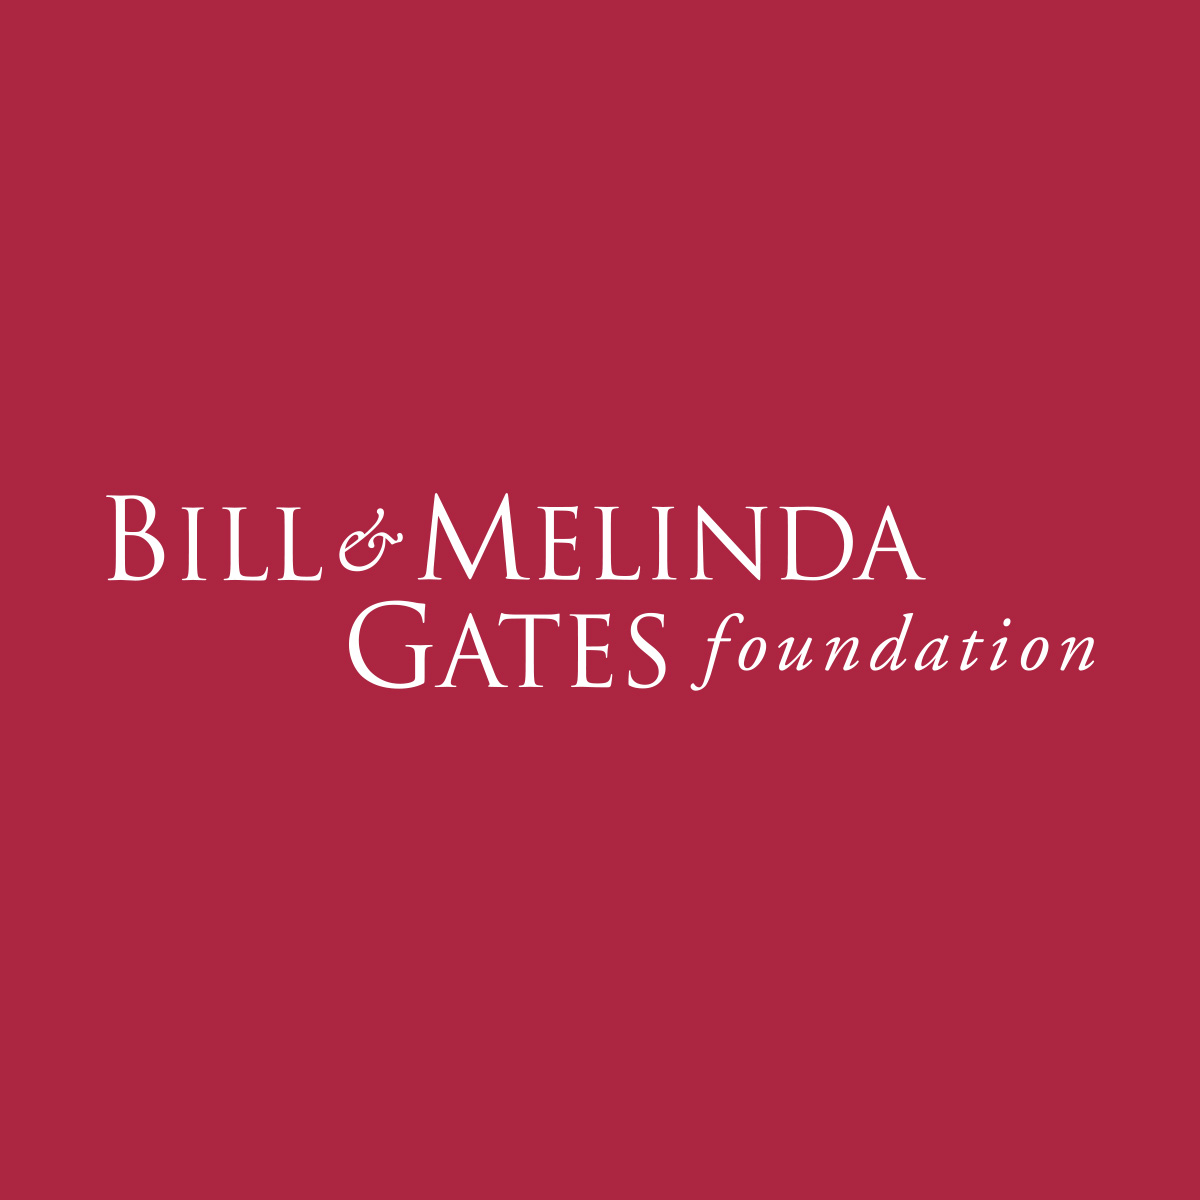 盖茨基金会支持抗艾滋病毒和疟疾研究